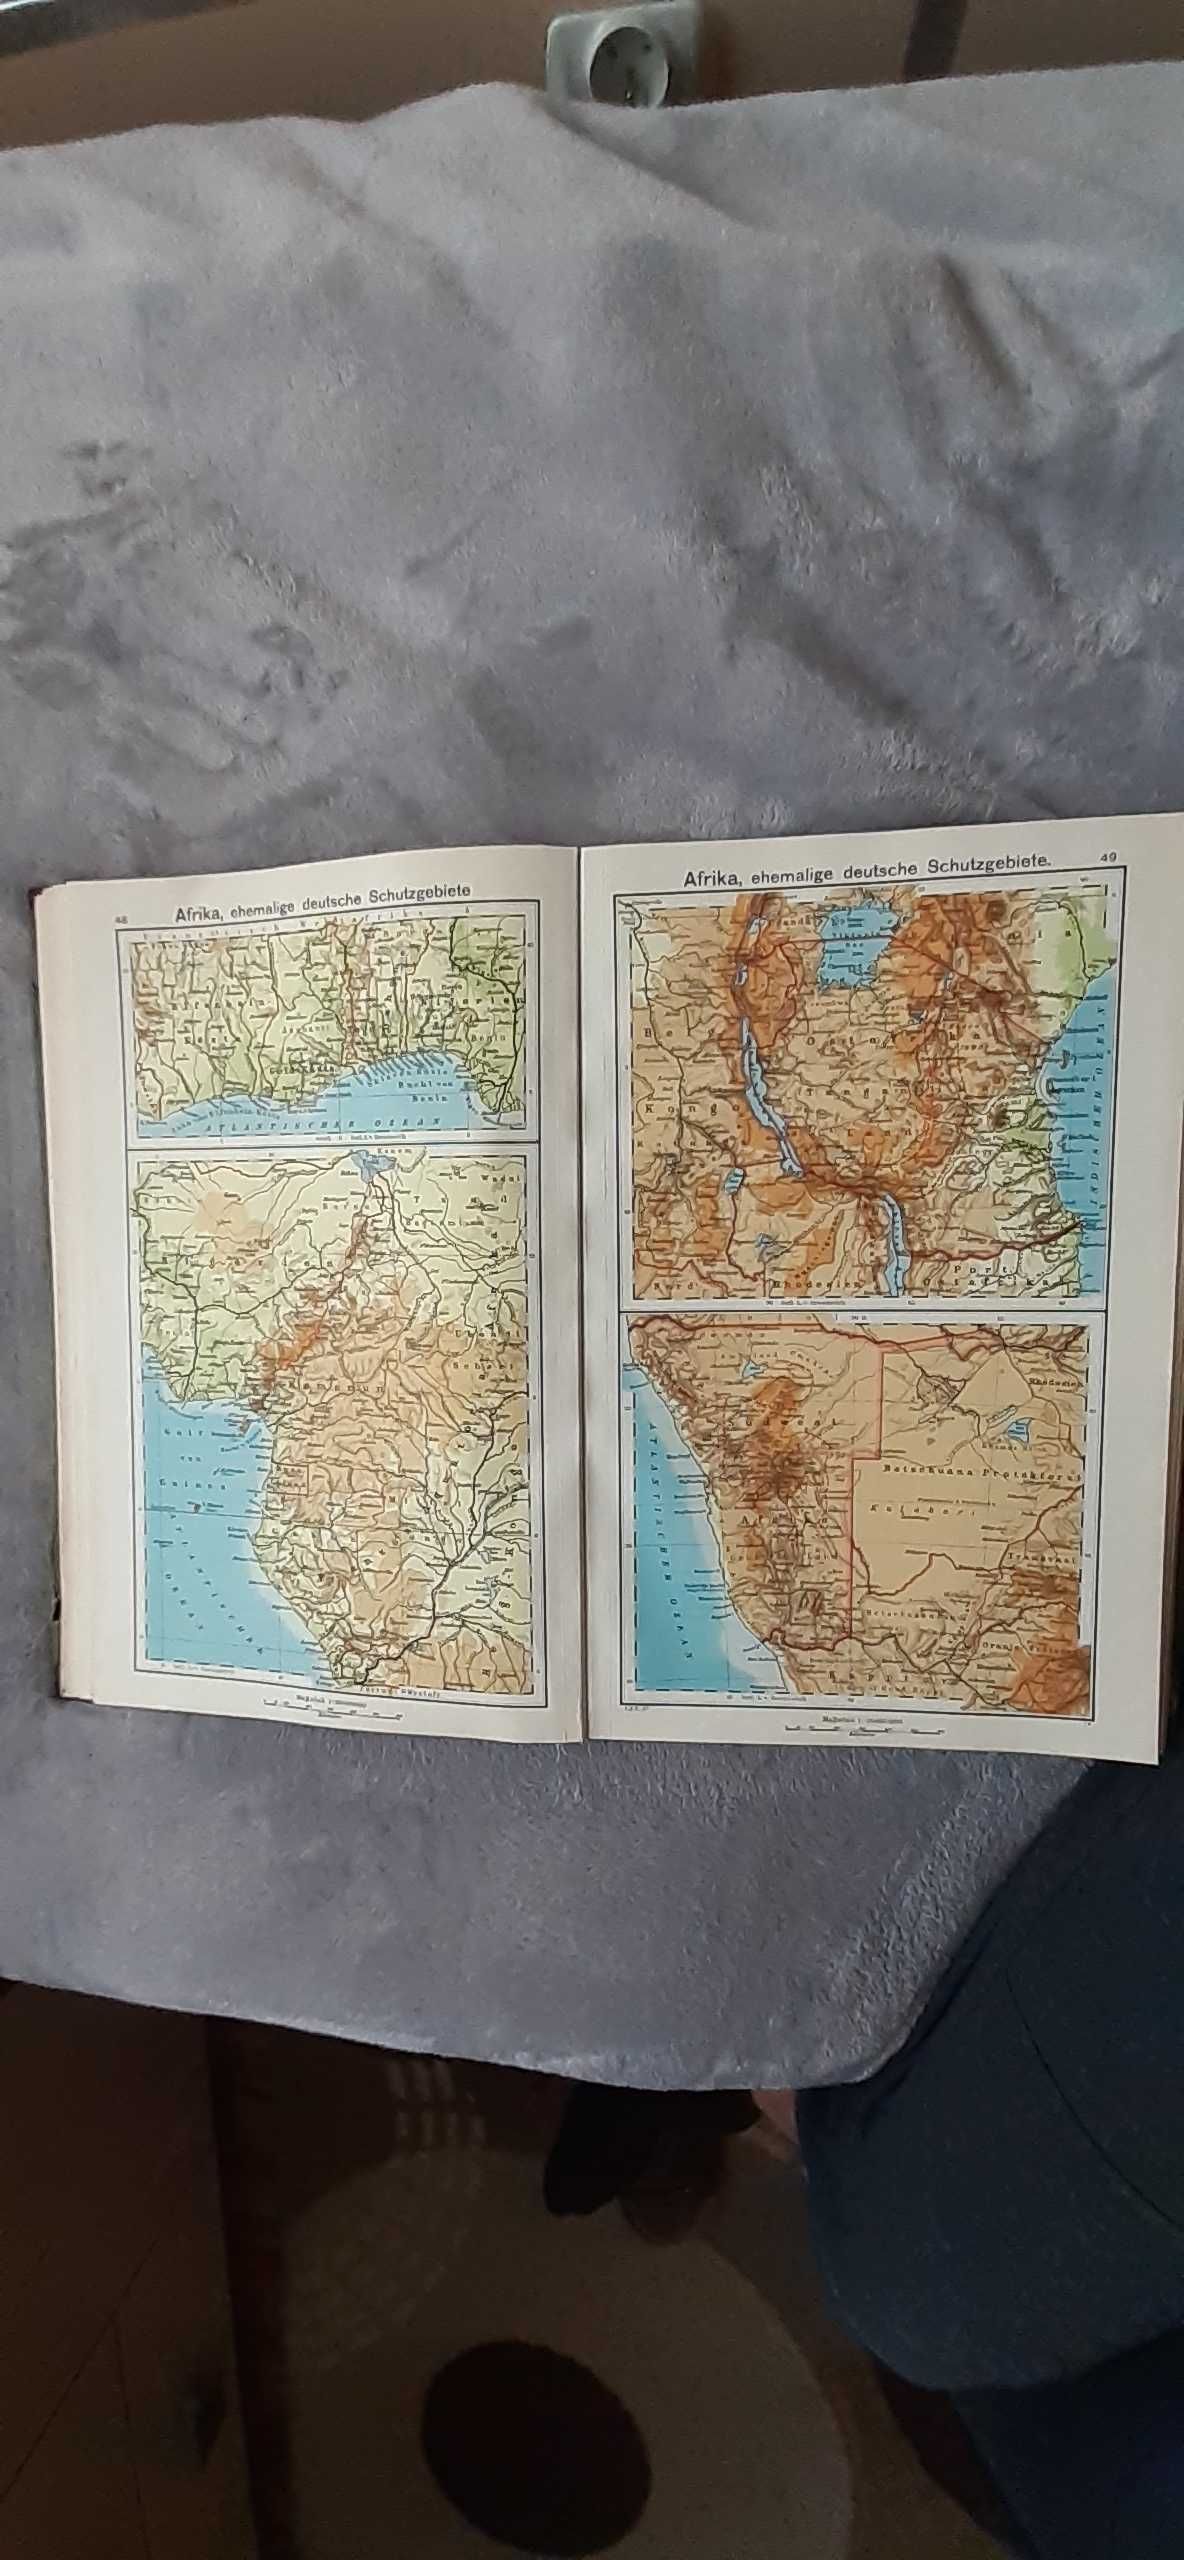 Stary przedwojenny niemiecki atlas geograficzny.